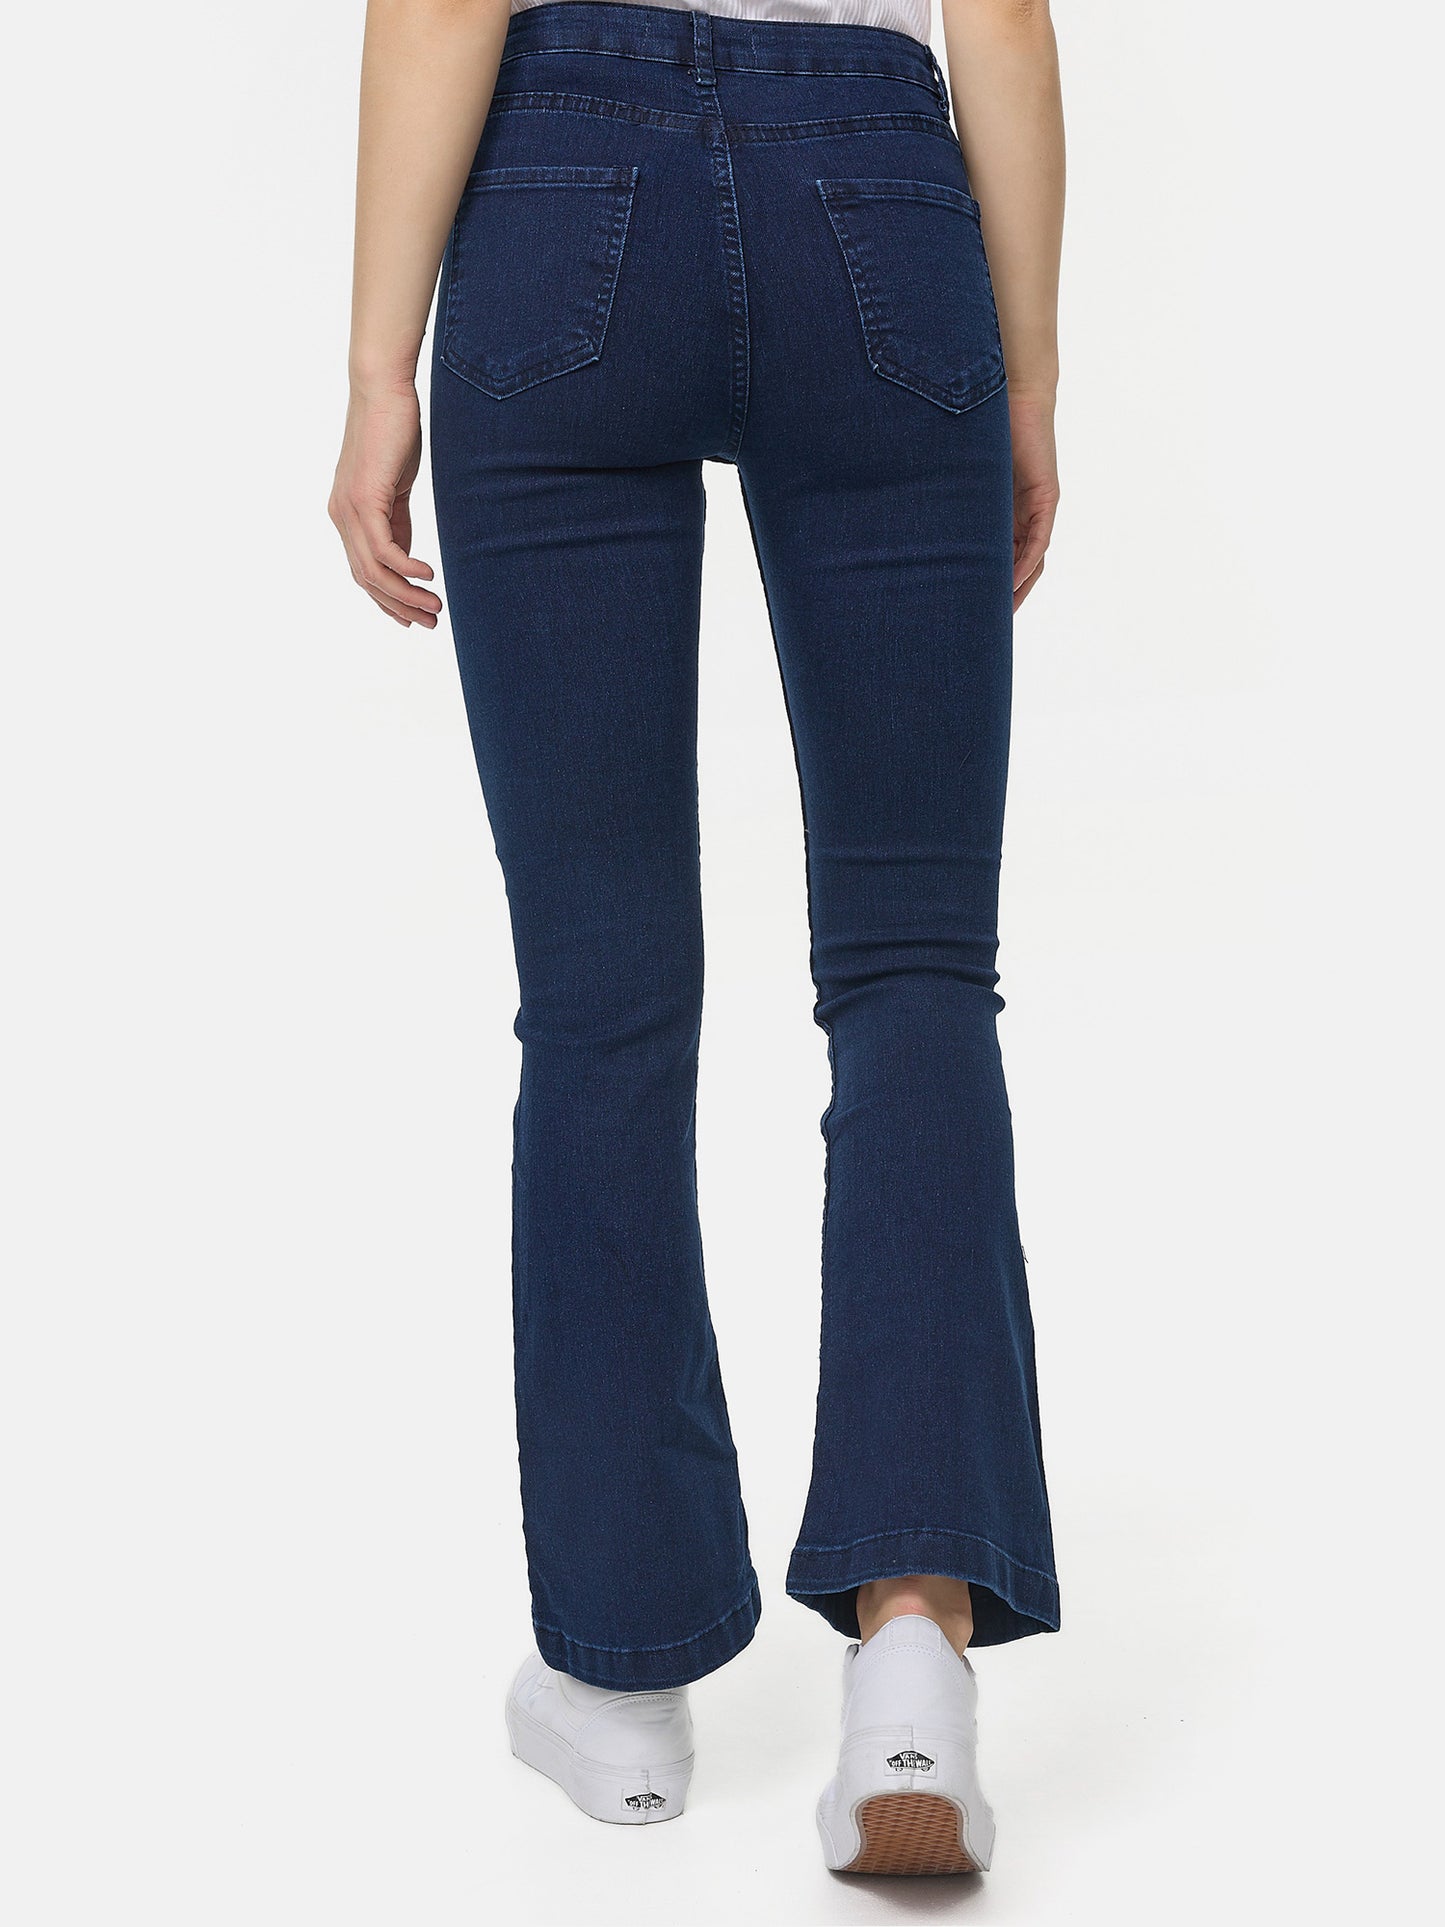 Tazzio Damen Bootcut Jeans F122